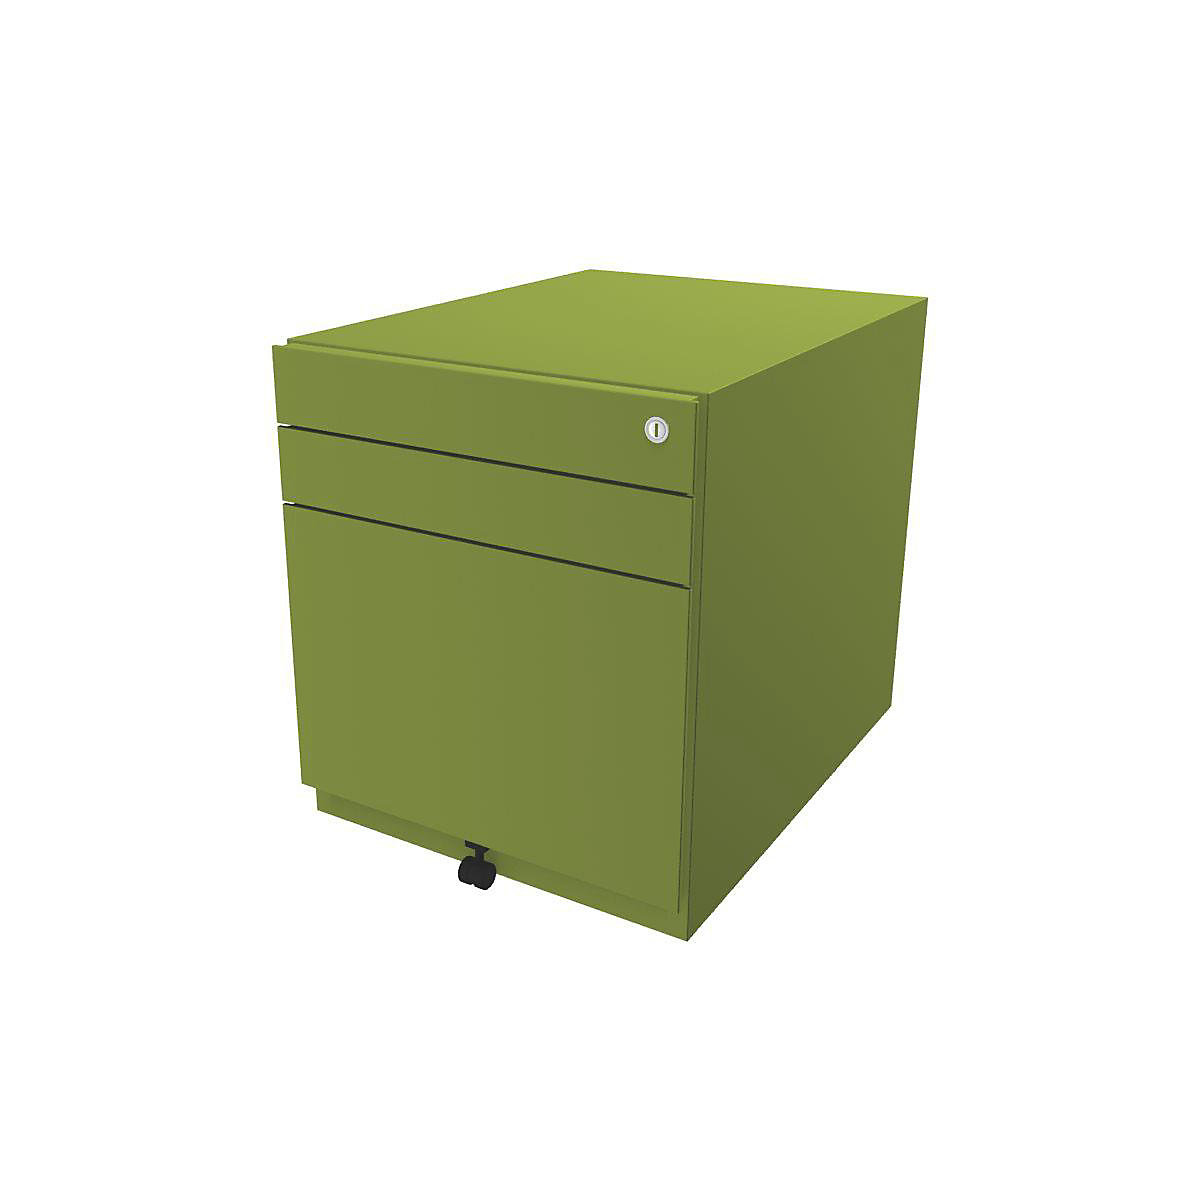 Pojazdný kontajner Note™, s 2 univerzálnymi zásuvkami, 1 závesná registratúra – BISLEY, v x š x h 565 x 420 x 565 mm, zelená-1